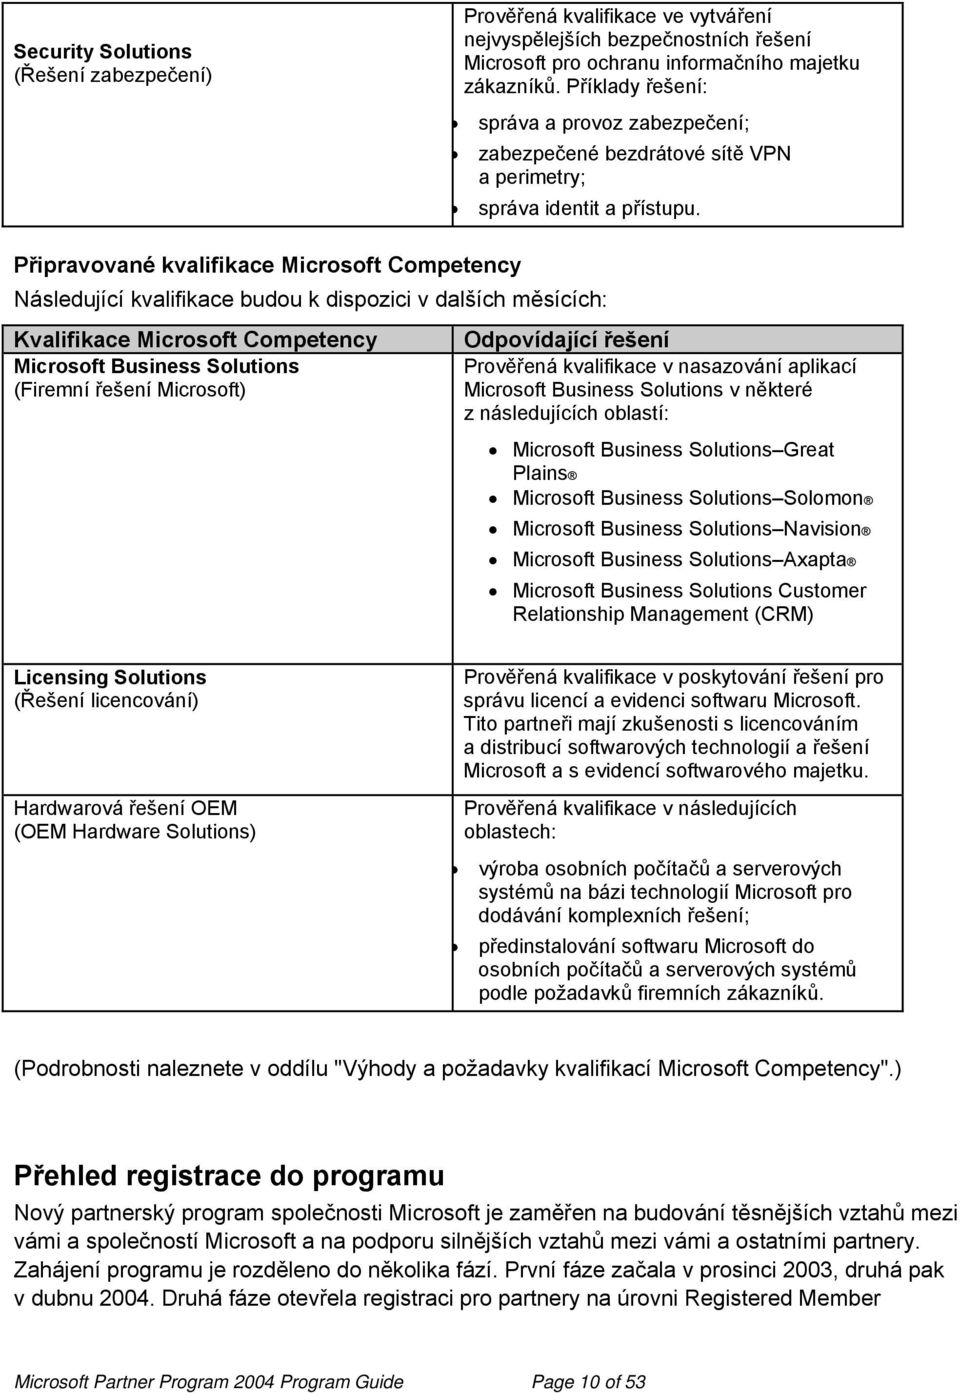 Připravované kvalifikace Microsoft Competency Následující kvalifikace budou k dispozici v dalších měsících: Kvalifikace Microsoft Competency Microsoft Business Solutions (Firemní řešení Microsoft)